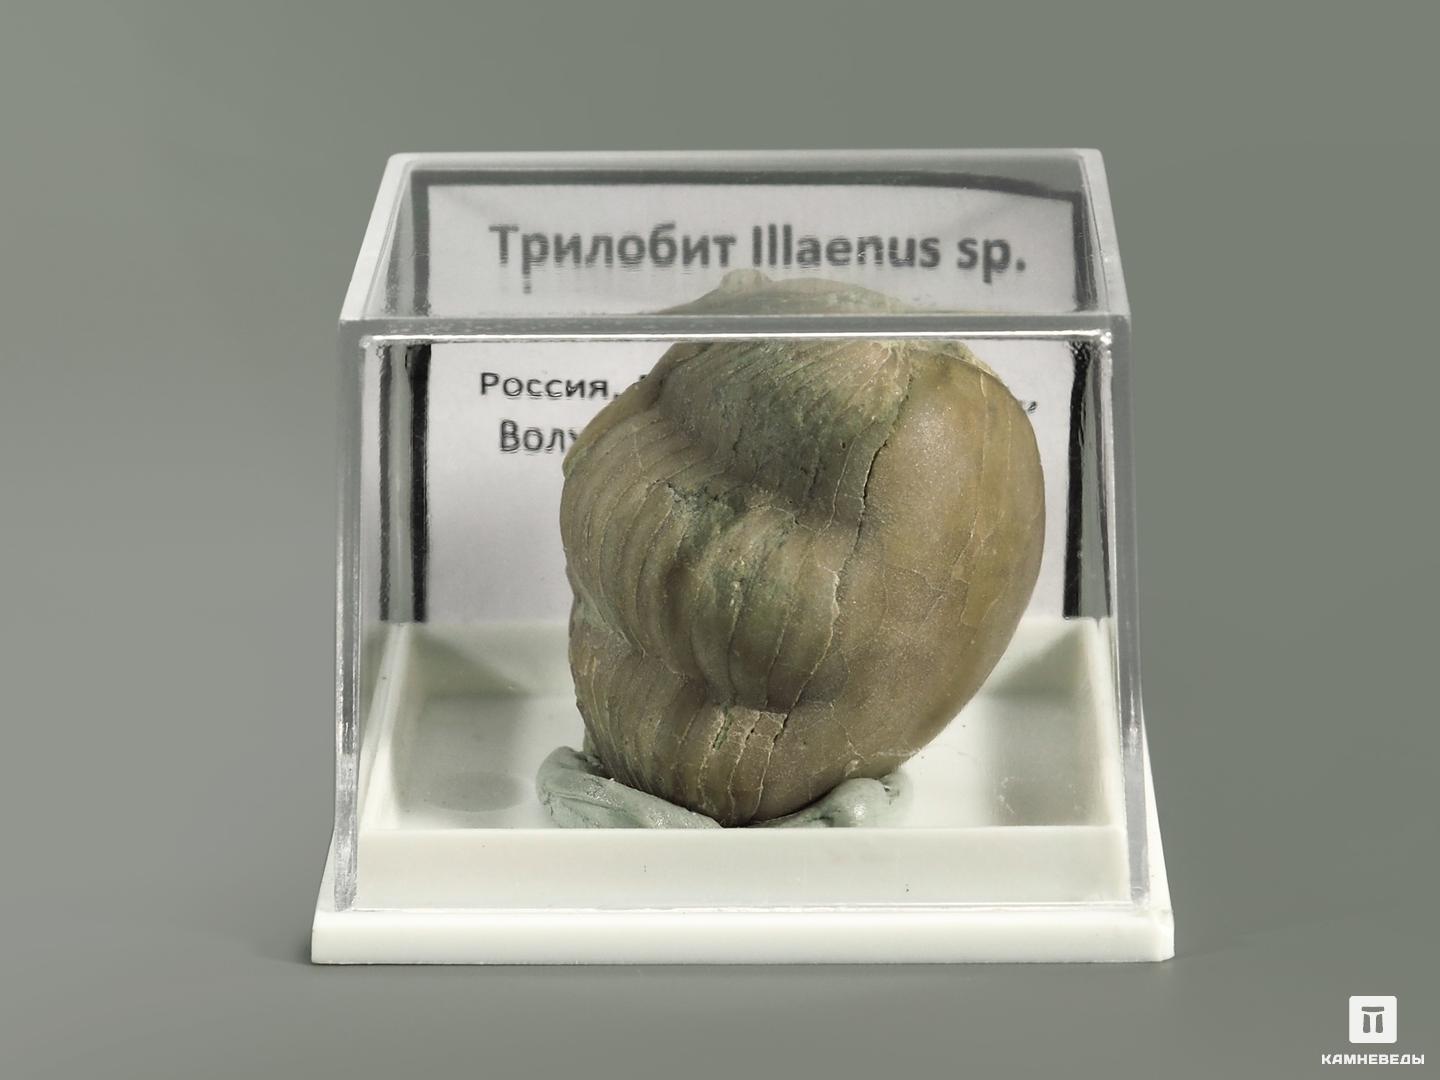 Трилобит Illaenus sp. в пластиковом боксе, 5366, фото 2